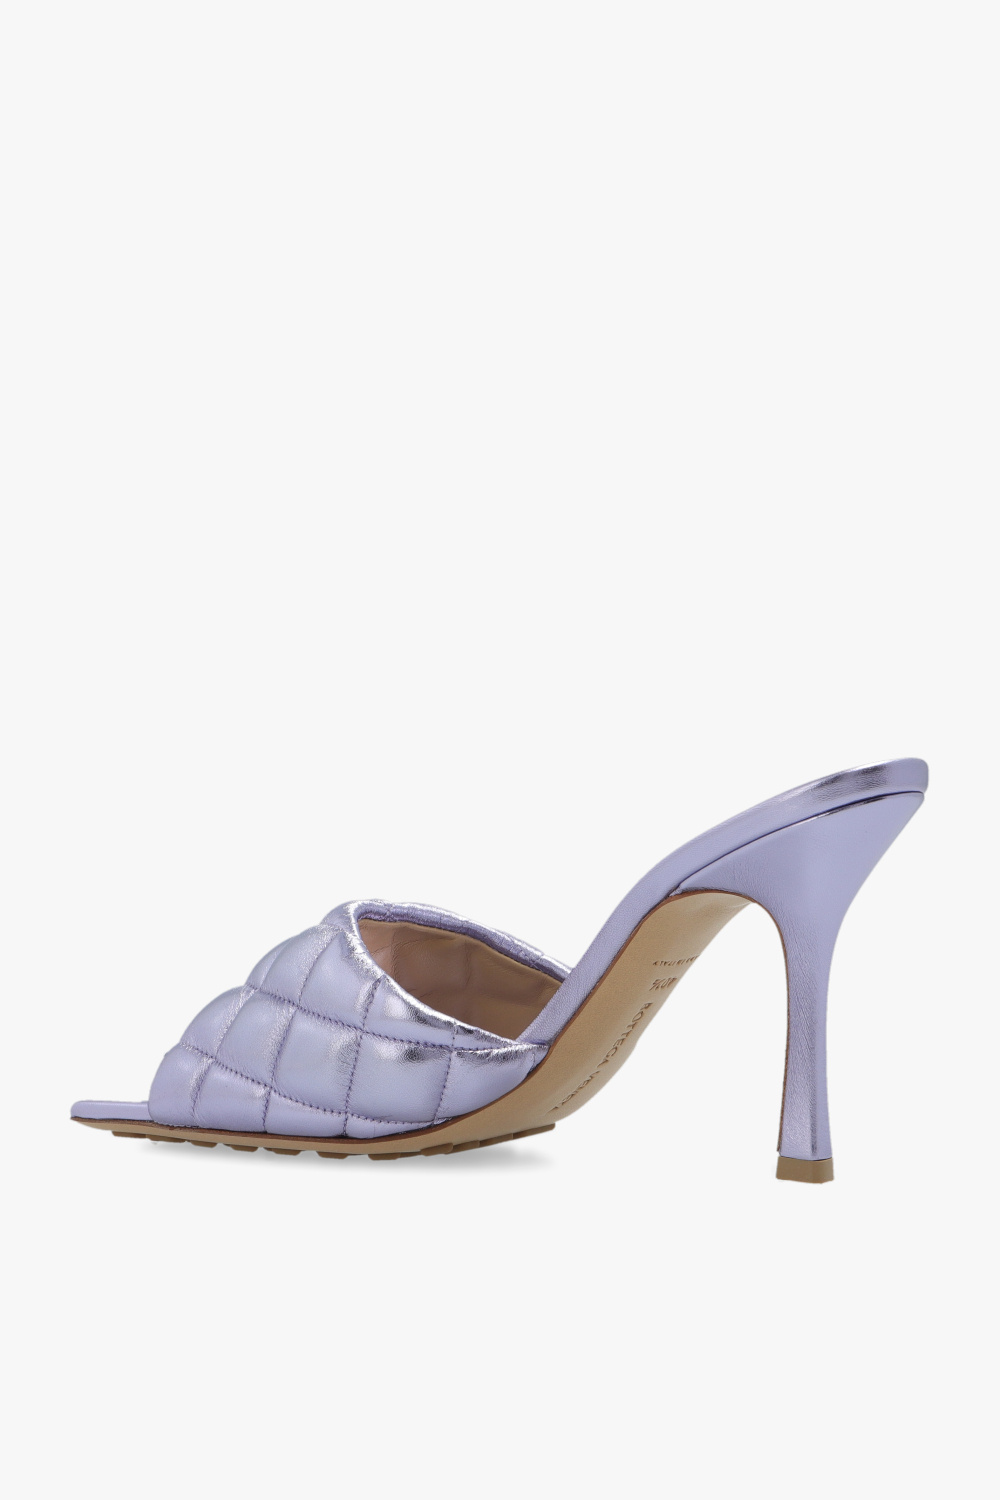 Bottega Veneta ‘Padded’ mules | Women's Shoes | Vitkac